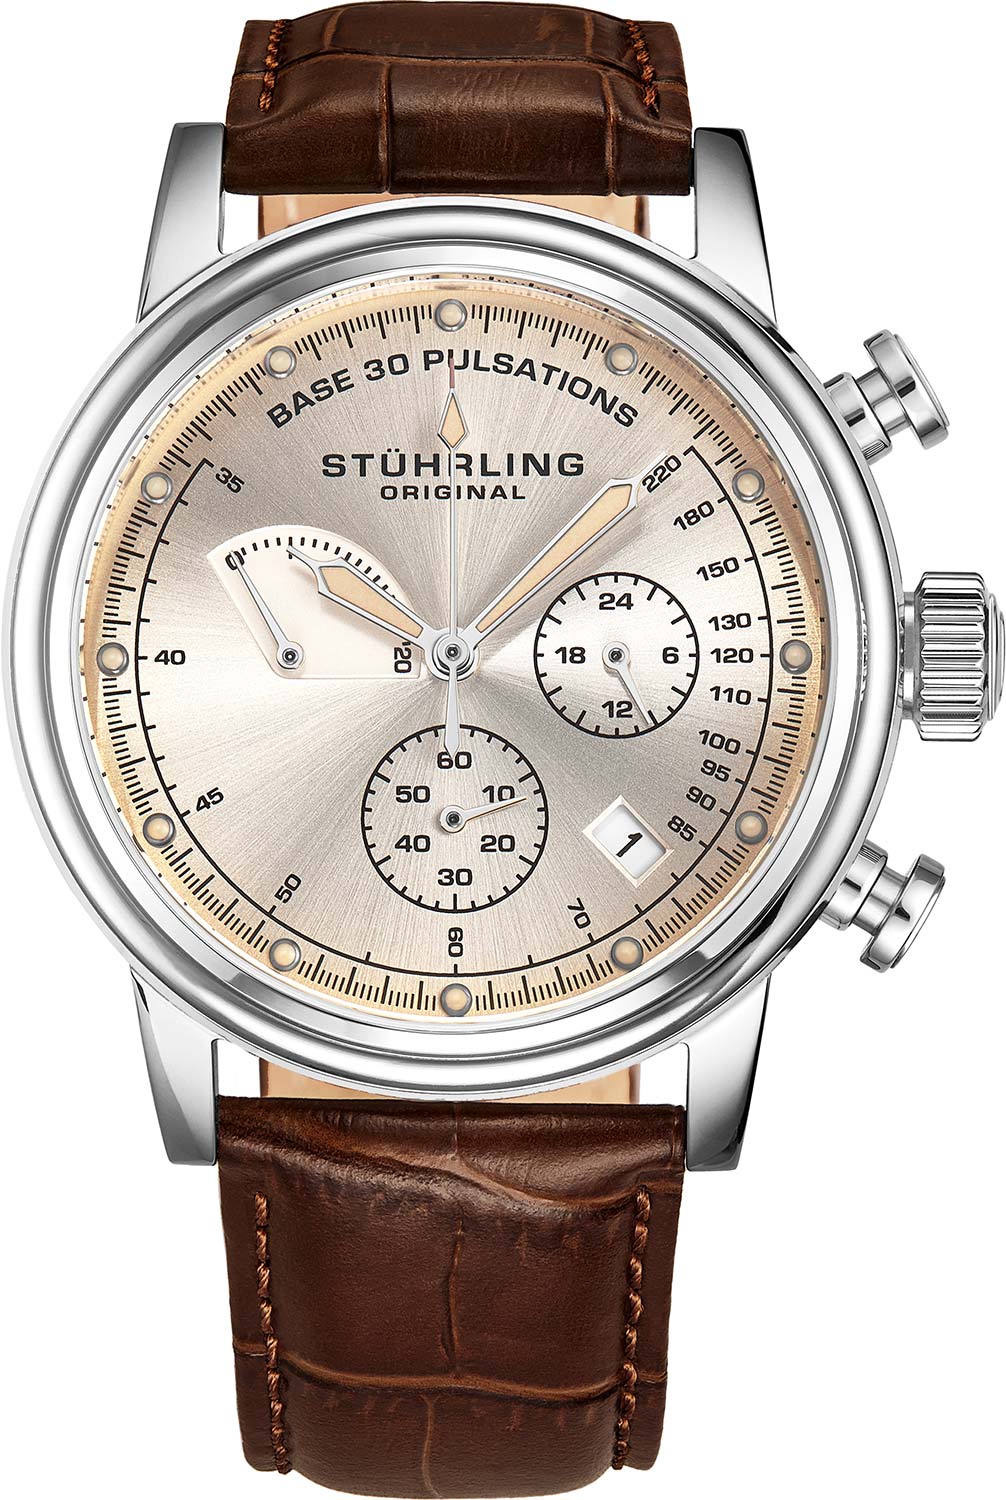 Спортивные наручные часы Stuhrling 895.03 с хронографом